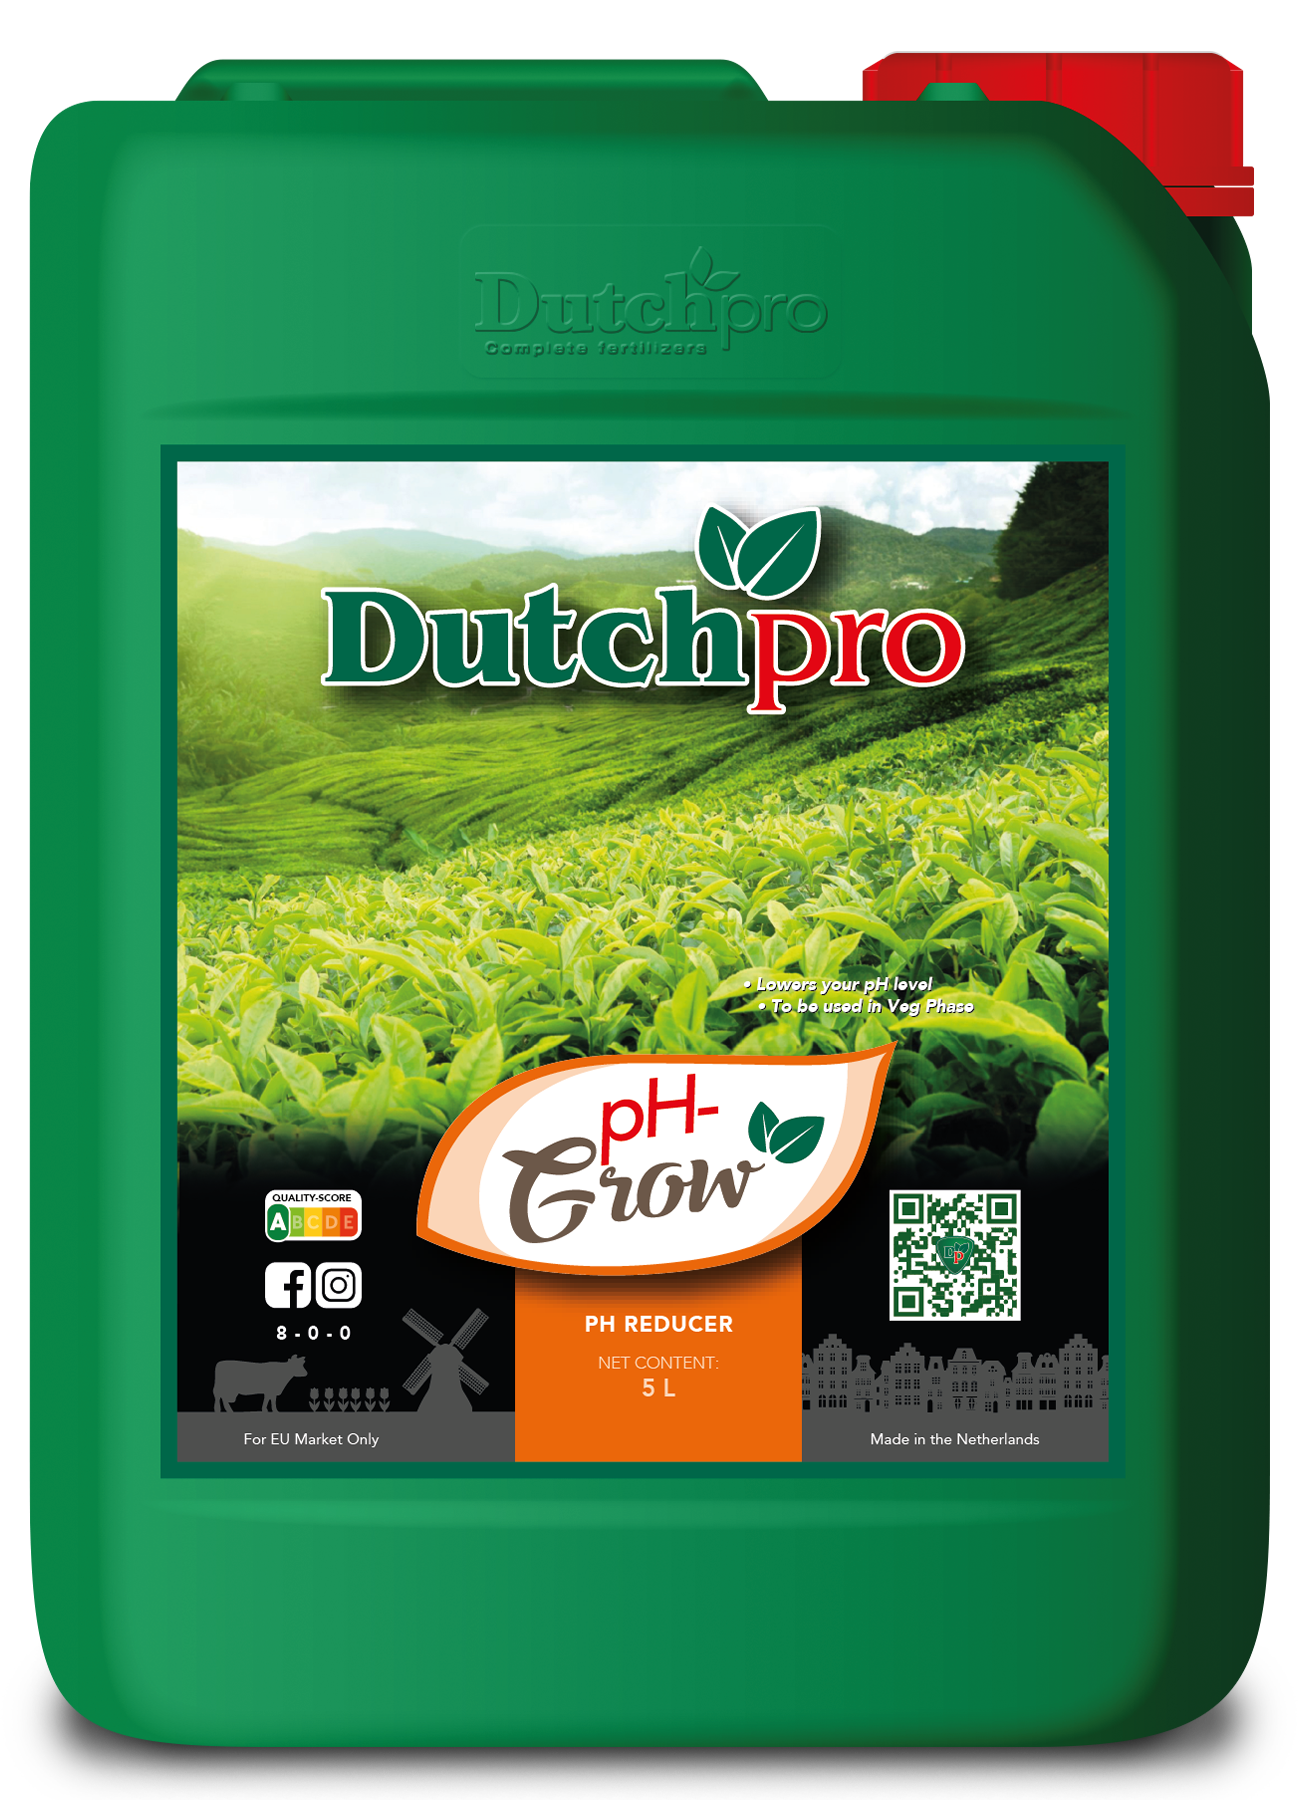 Dutchpro pH- Grow